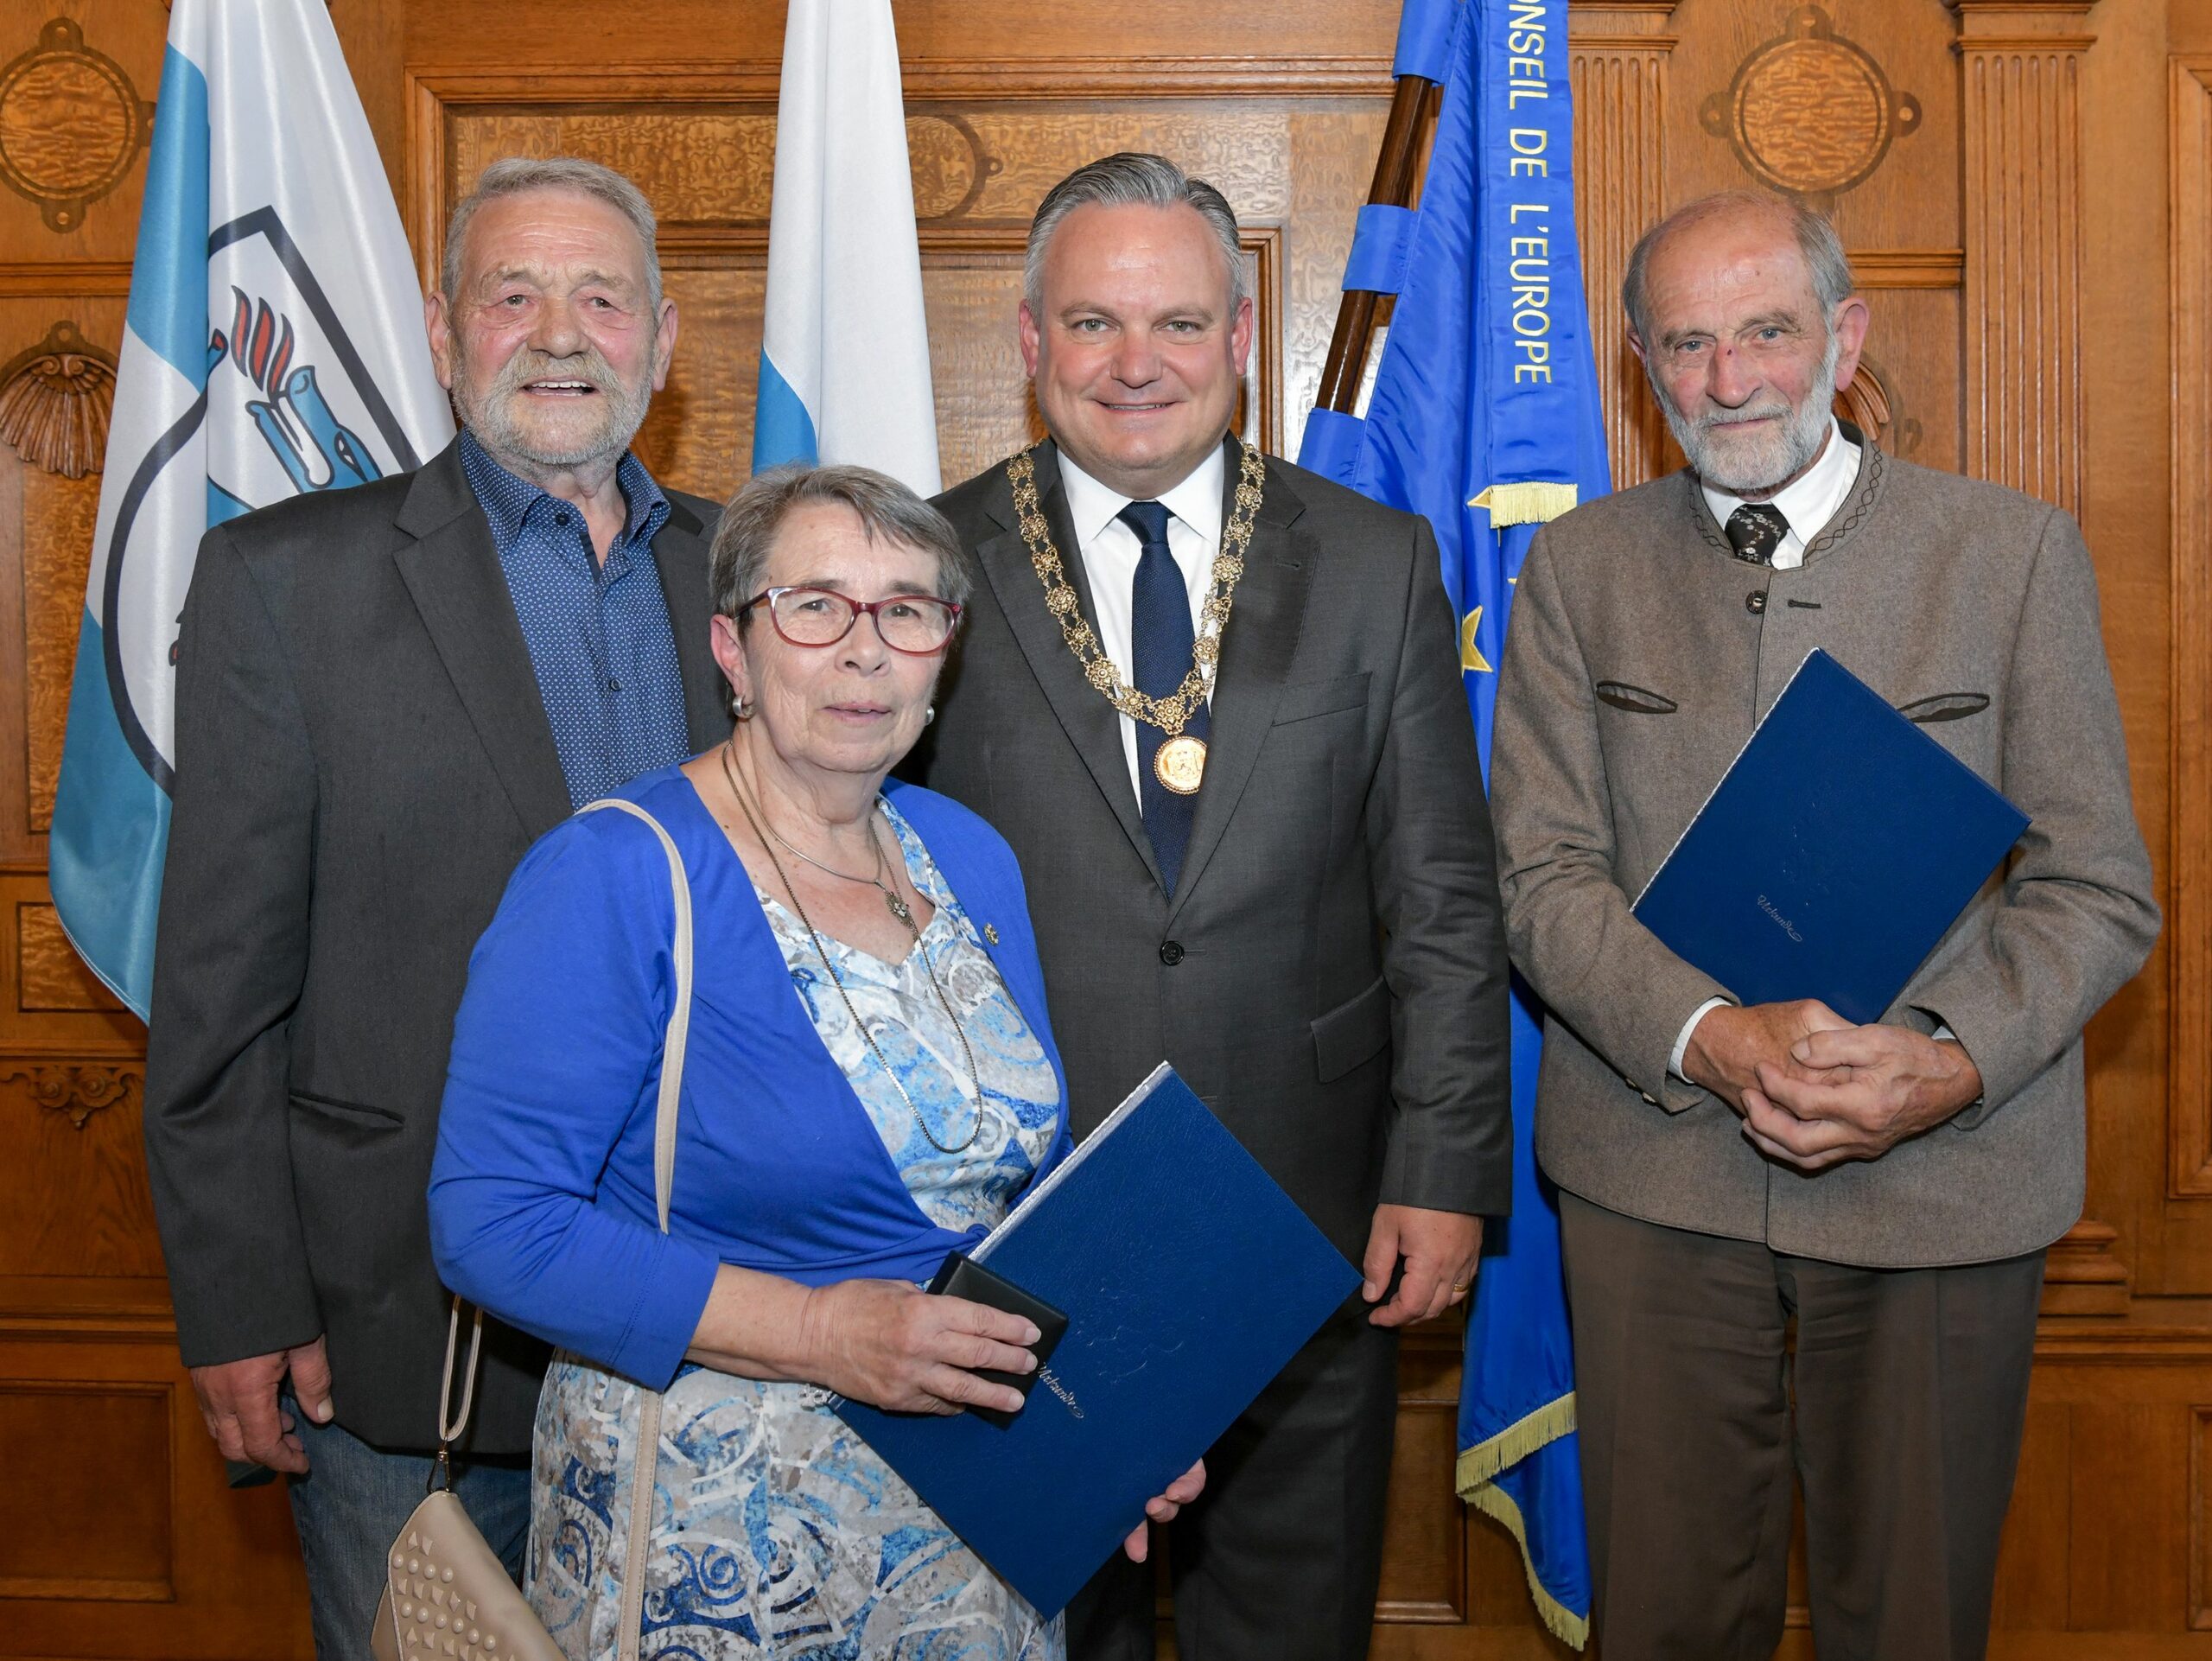 Von Oberbürgermeister Christian Scharpf mit der Hans-Peringer-Medaille ausgezeichnet: Winfried Werthner, Sonja Schürle und Martin Dick